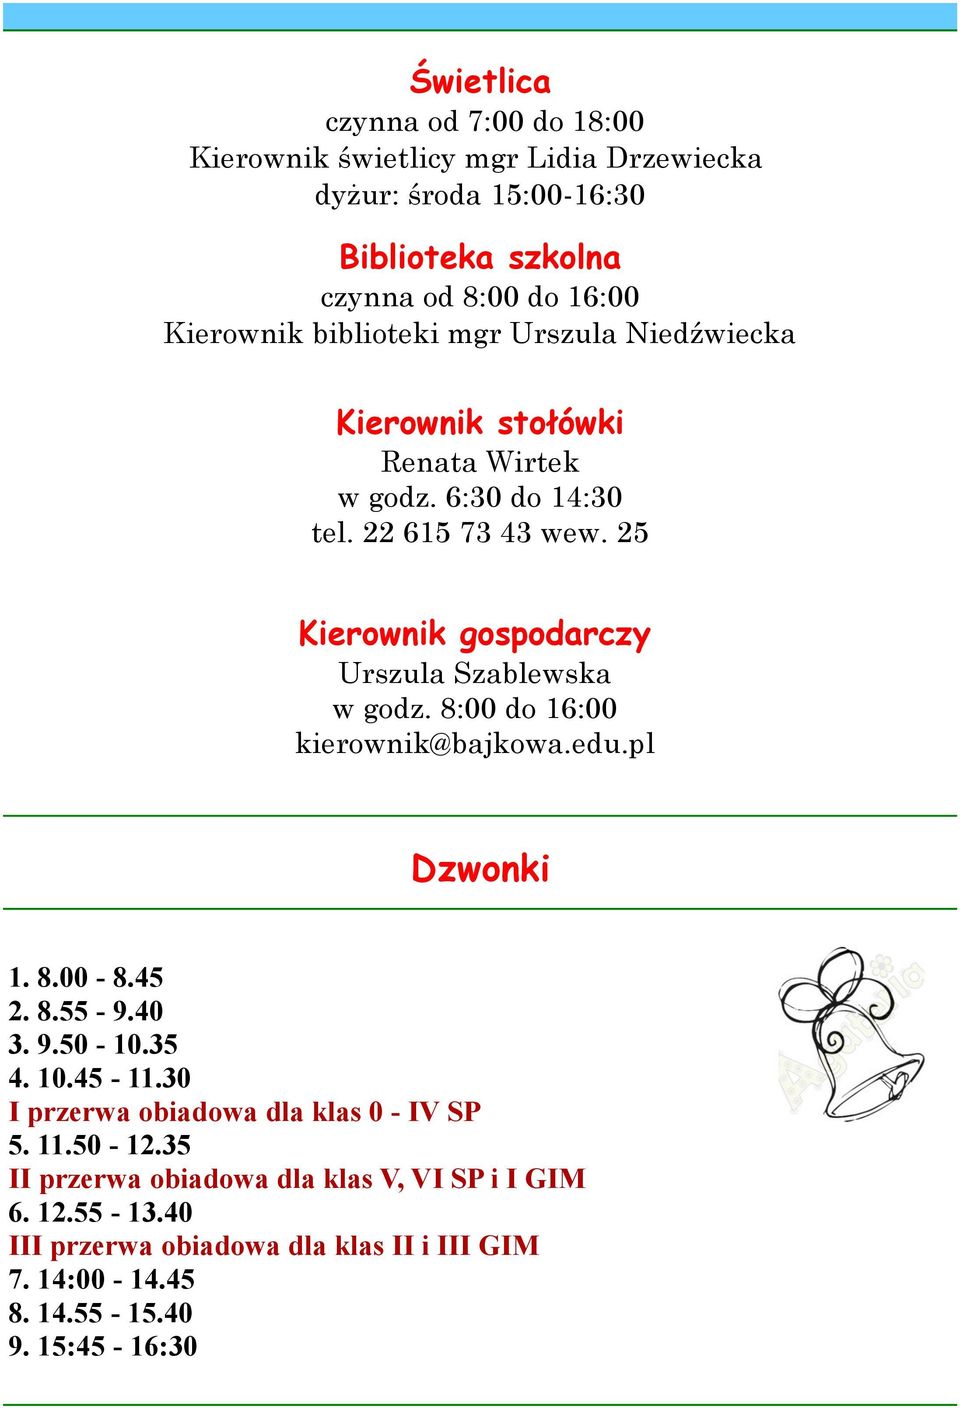 25 Kierownik gospodarczy Urszula Szablewska w godz. 8:00 do 16:00 kierownik@bajkowa.edu.pl Dzwonki 1. 8.00-8.45 2. 8.55-9.40 3. 9.50-10.35 4. 10.45-11.